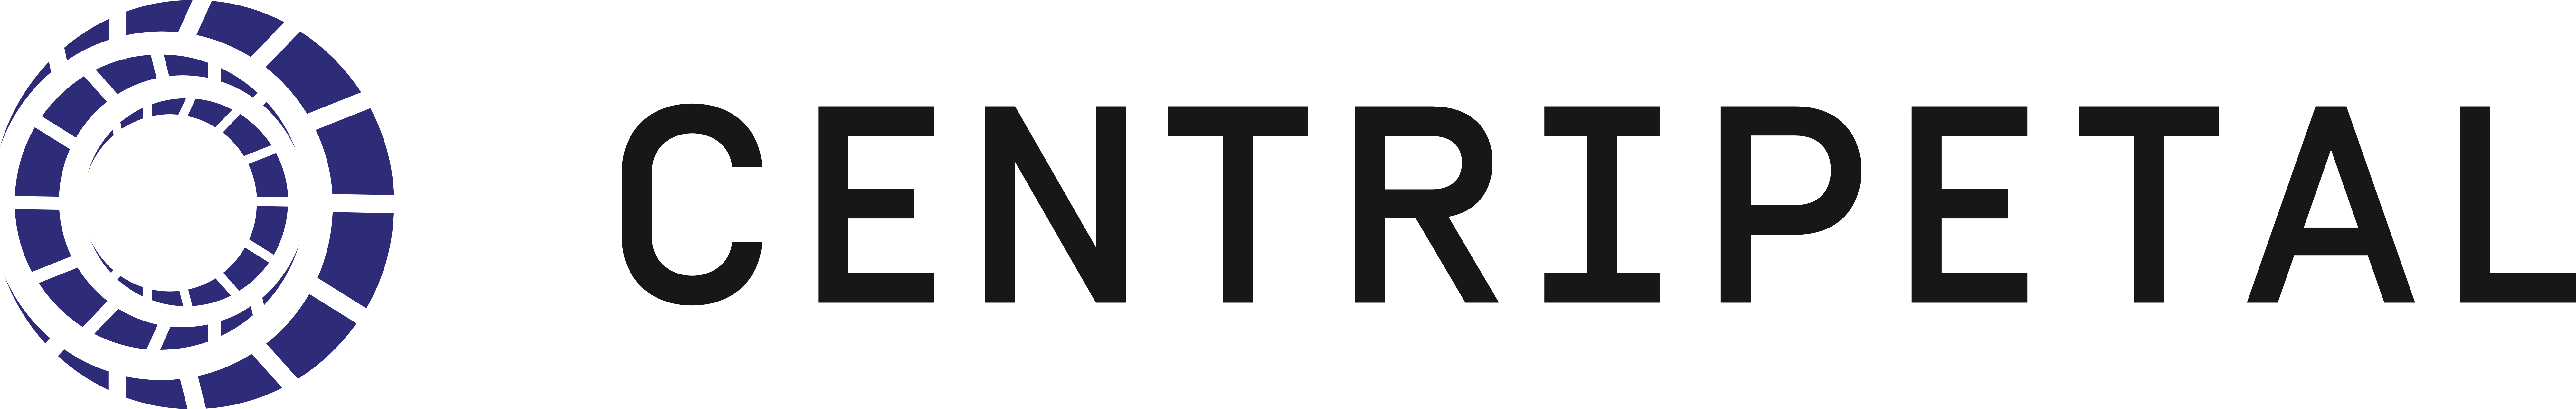 Centripetal logo